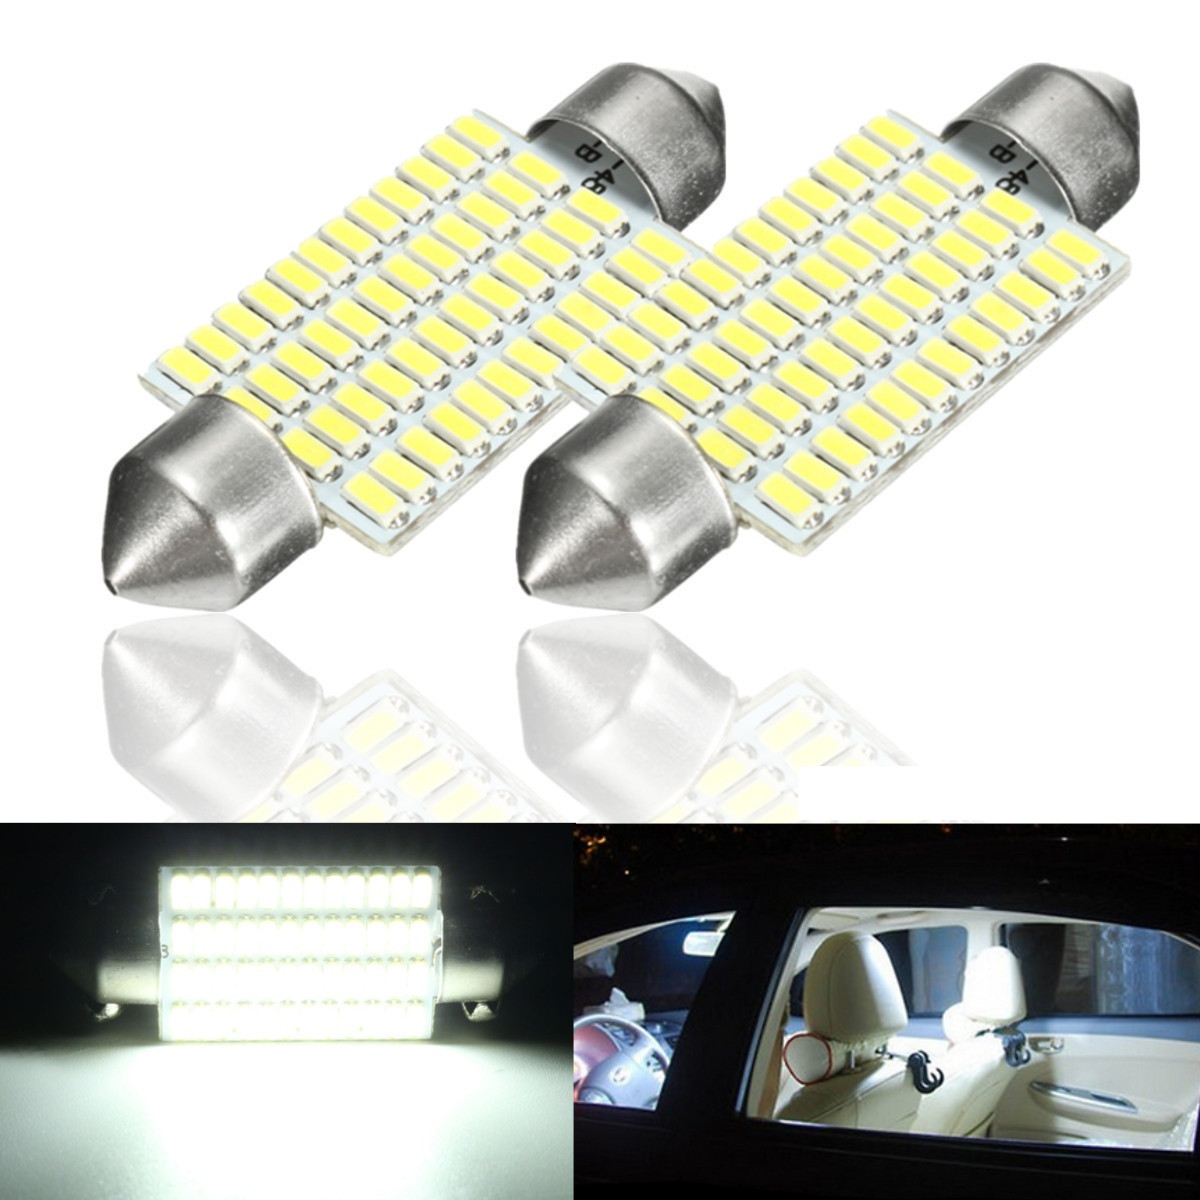 

2Pcs 3W 41mm Car Interior LED Festonn Readding Roof Light Lamp Bulb White